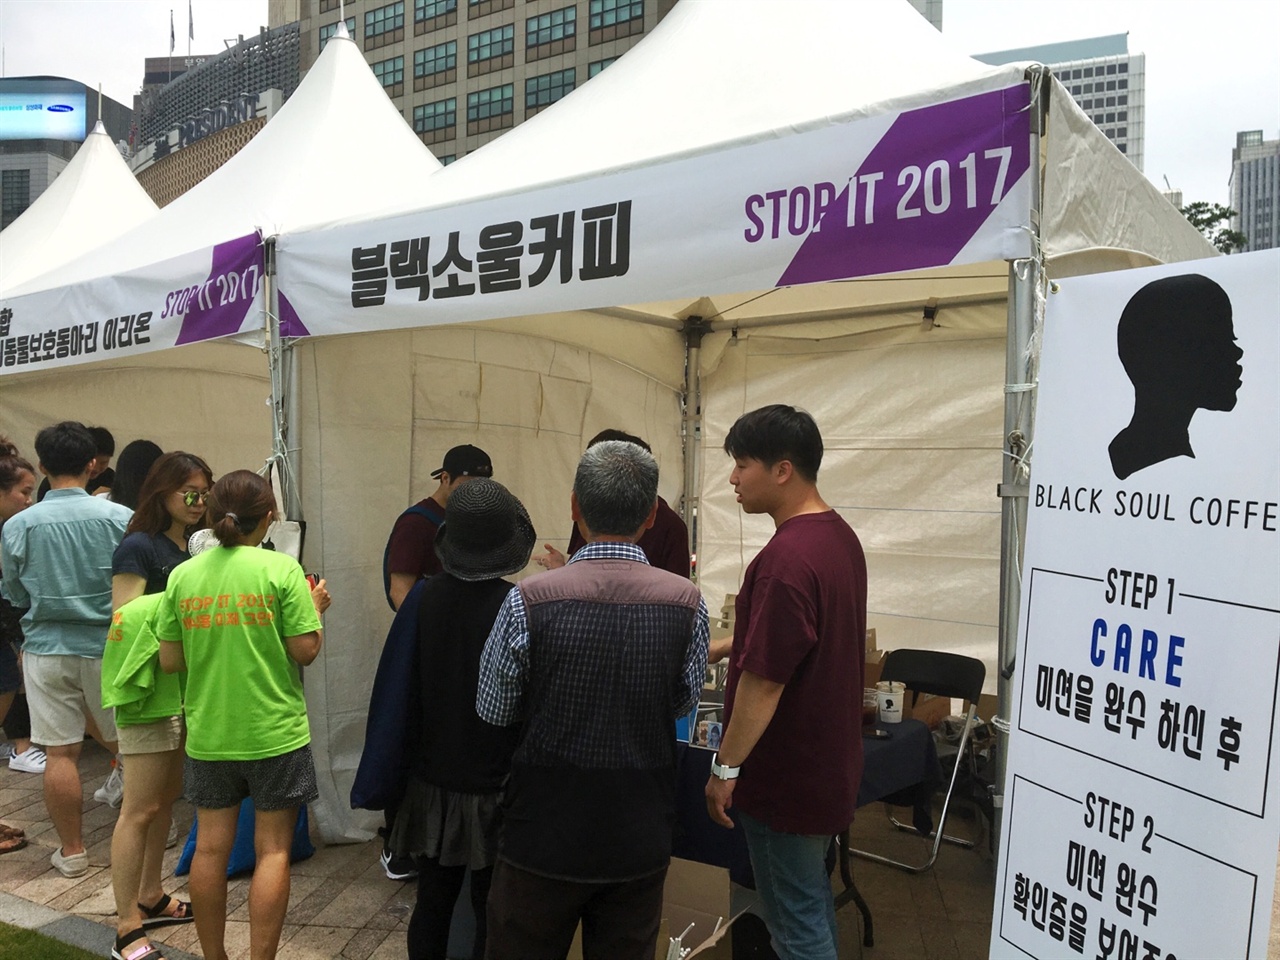 지난 7월 9일 서울 시청 광장에서 열렸던 '이제그만잡수시개' 행사에 참여했던 블랙소울커피는 CARE에서 진행하는 부스 미션을 완수한 이후 확인증을 보여주는 참가자에 한해서 아메리카노를 나누어주는 부스를 진행했다. 